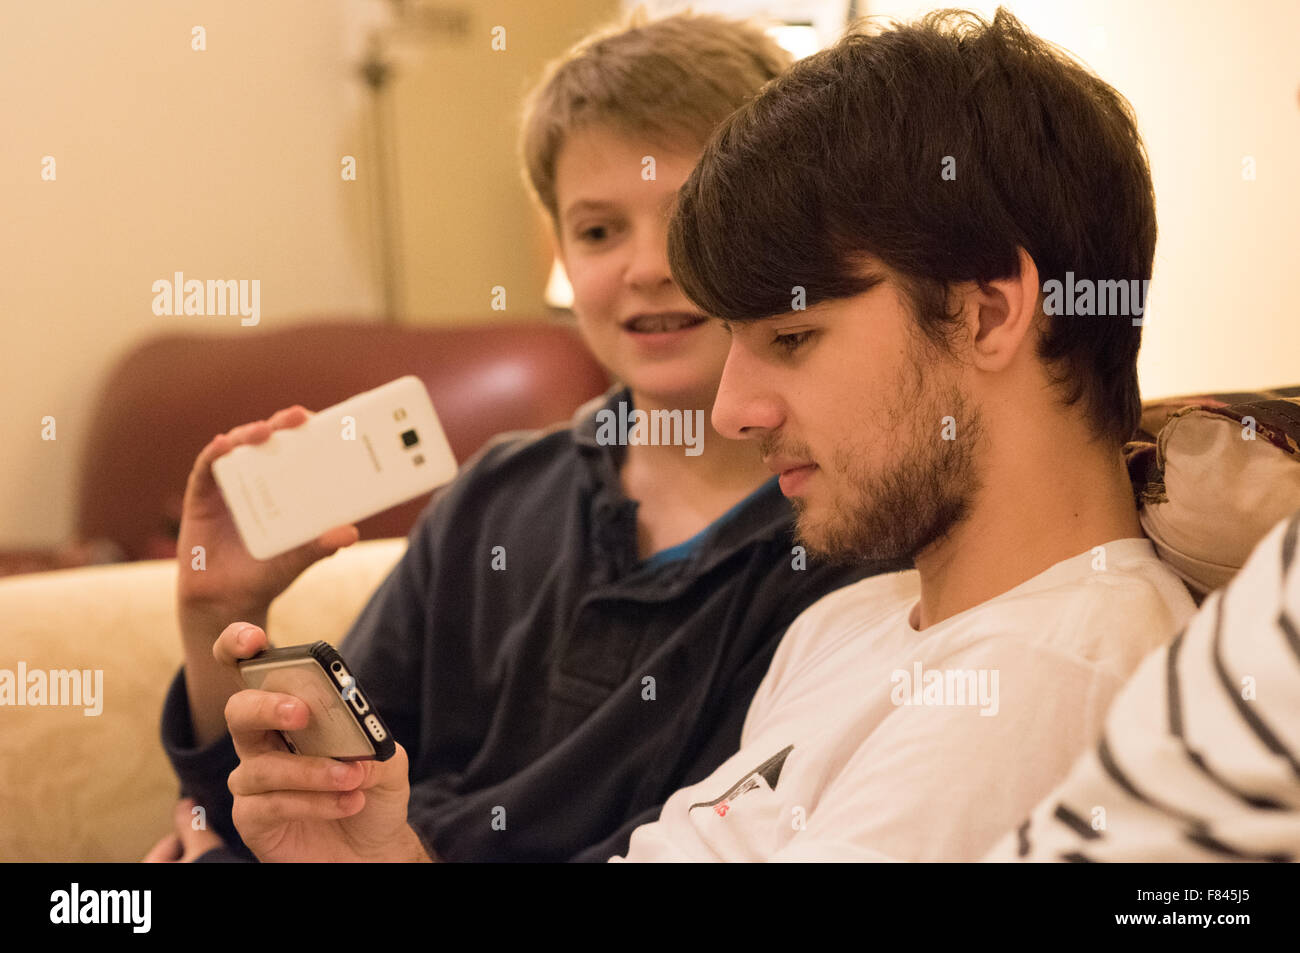 Drei gut aussehende weiße glücklich Jungs im Teenageralter Lachen und Blick auf ihre Handys, Online-Spiele, YouTube anschauen und auf soziale meida Stockfoto